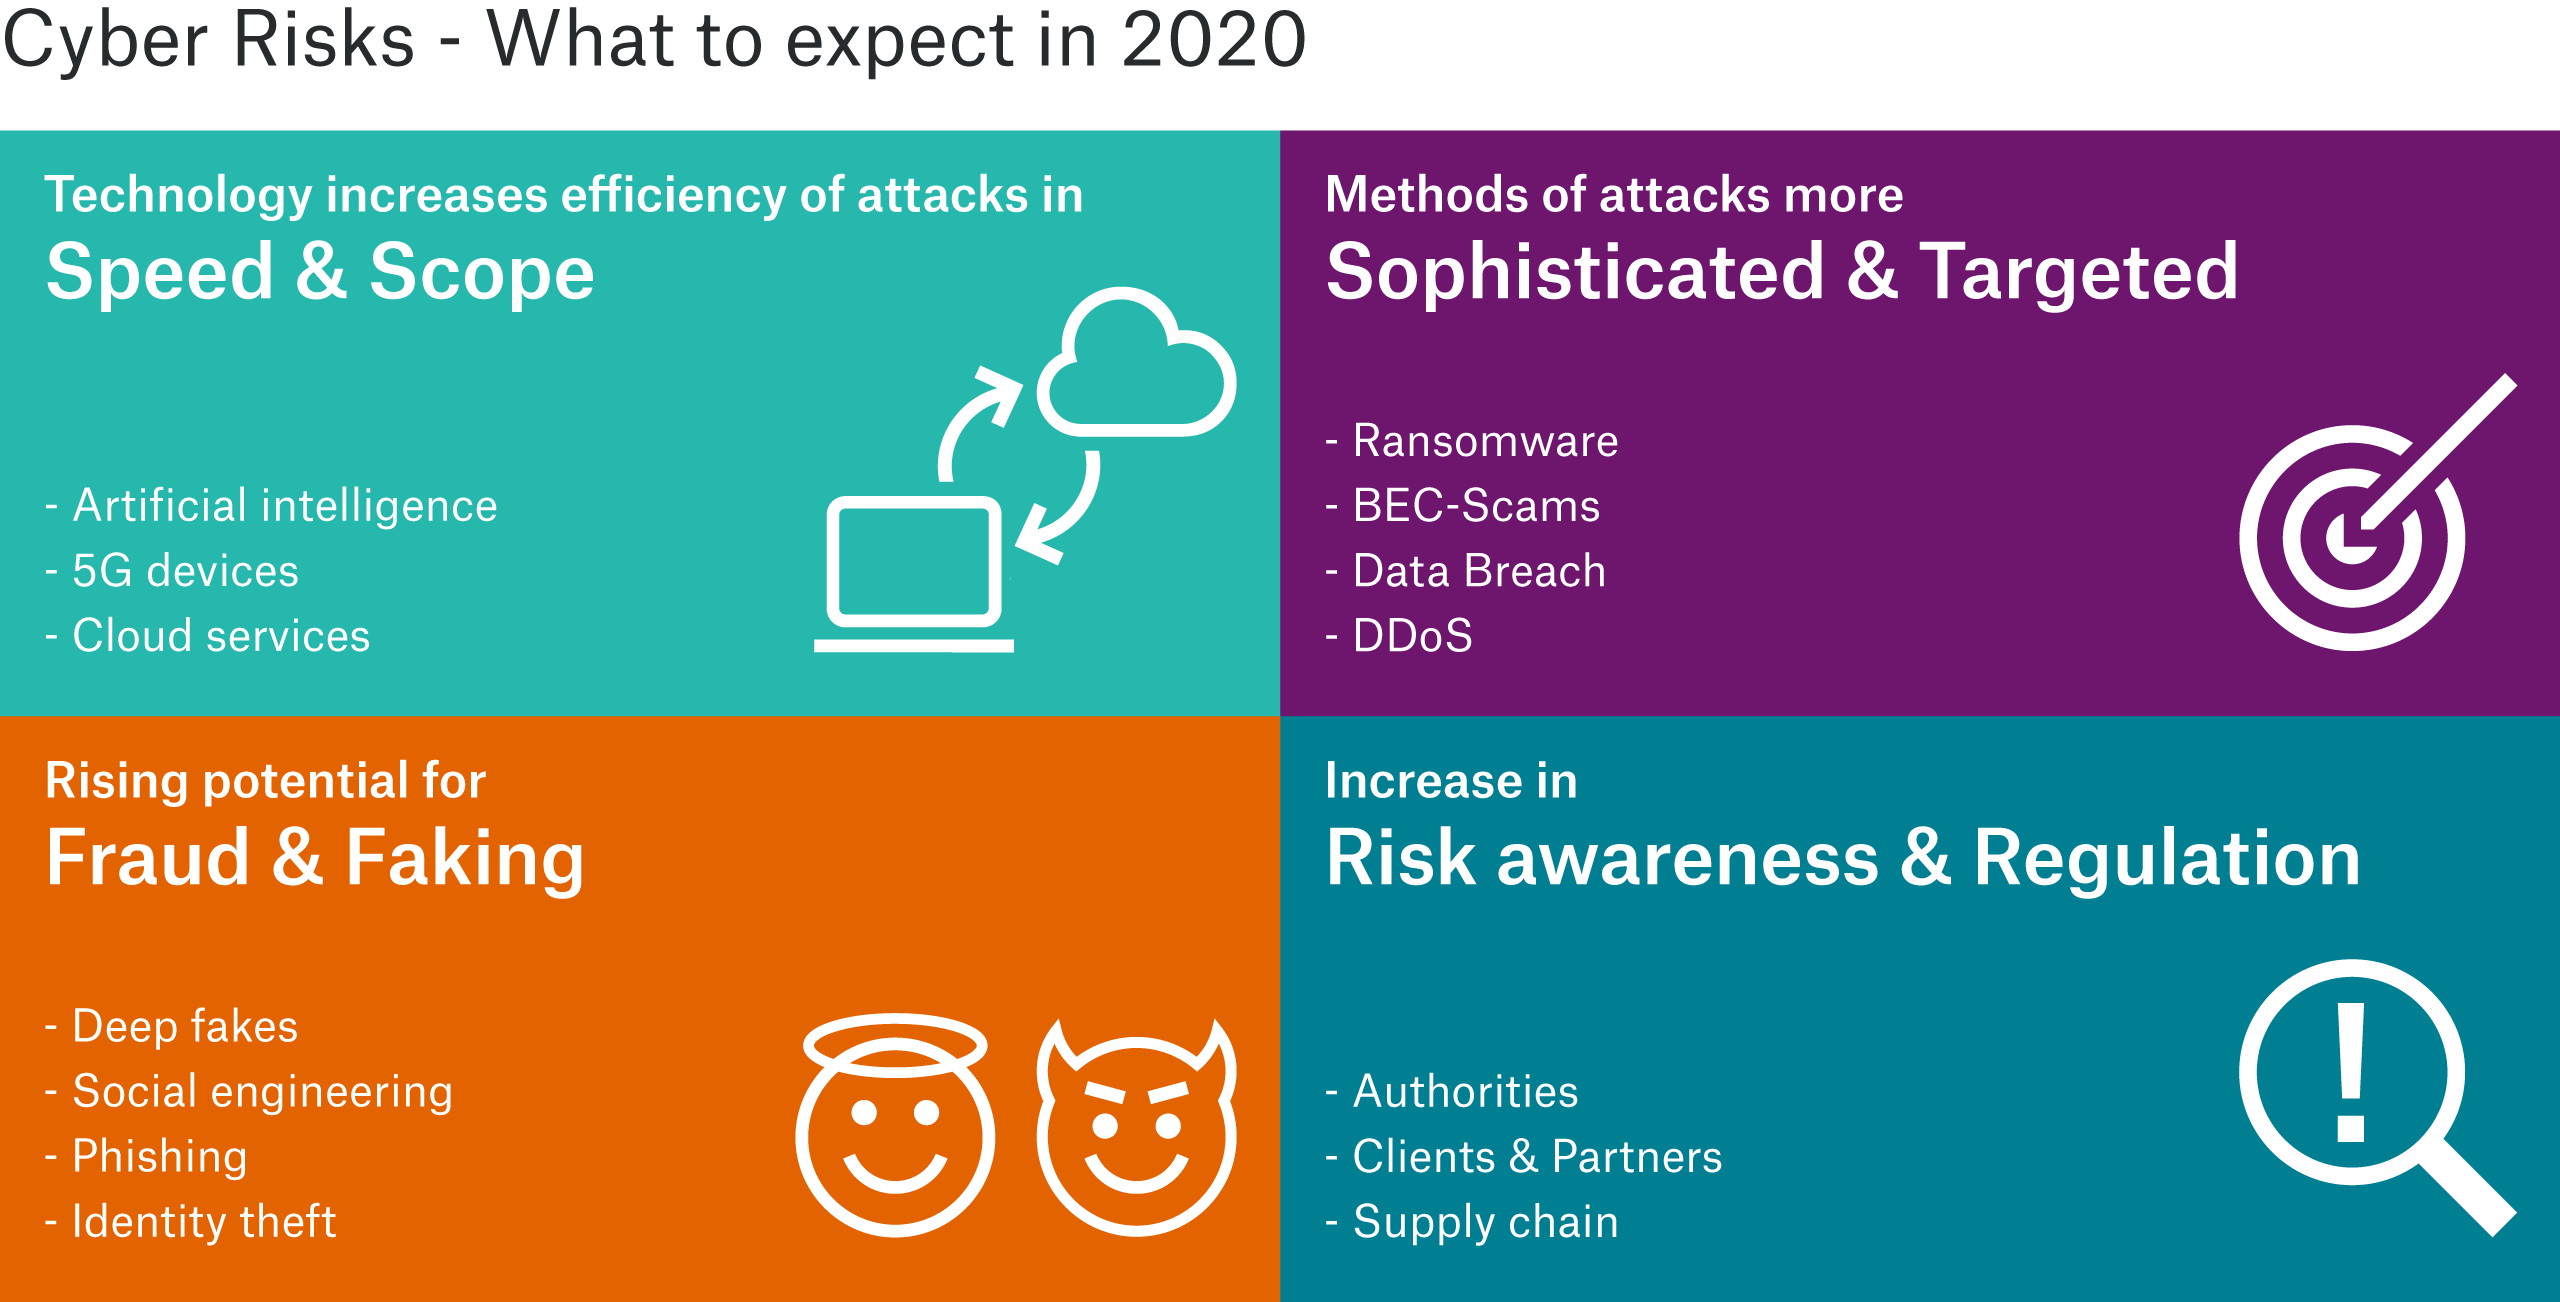 cyber risks - what to expect in 2020: Grafik mit Informationen zu Trends in Geschwindigkeit, Umfang, Raffinesse und Zielen von Cyber Attacken, sowie Risikobewusstsein und Regulation.